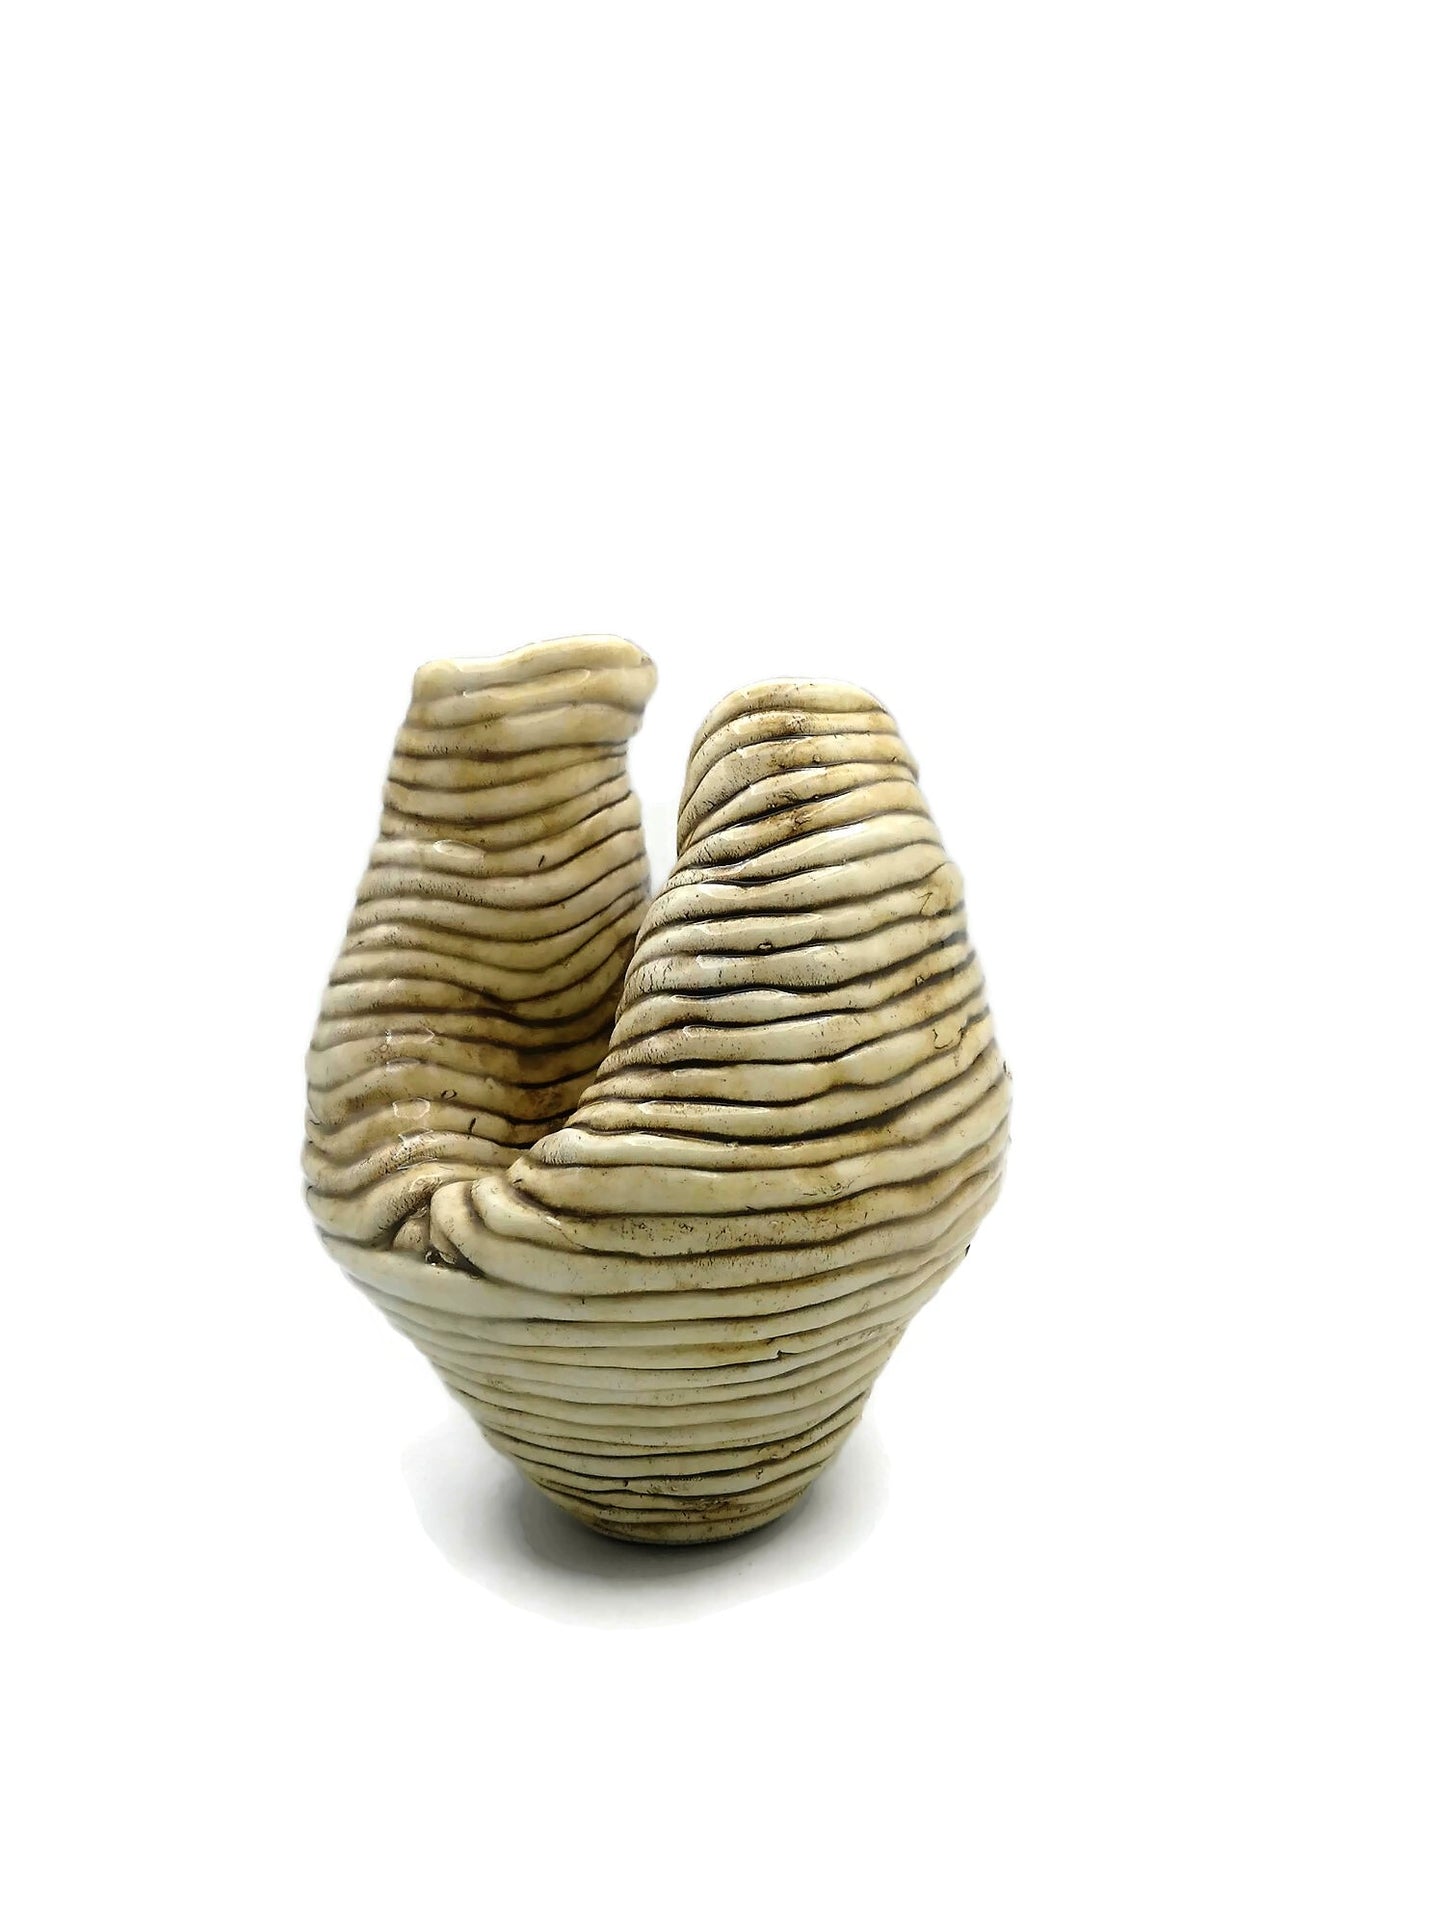 Sculptural Handmade Ceramic Vase, Pottery Vase Irregular Shape, Mom Birthday Gift, Mid Century Modern Abstract Sculpture Vessel - Ceramica Ana Rafael